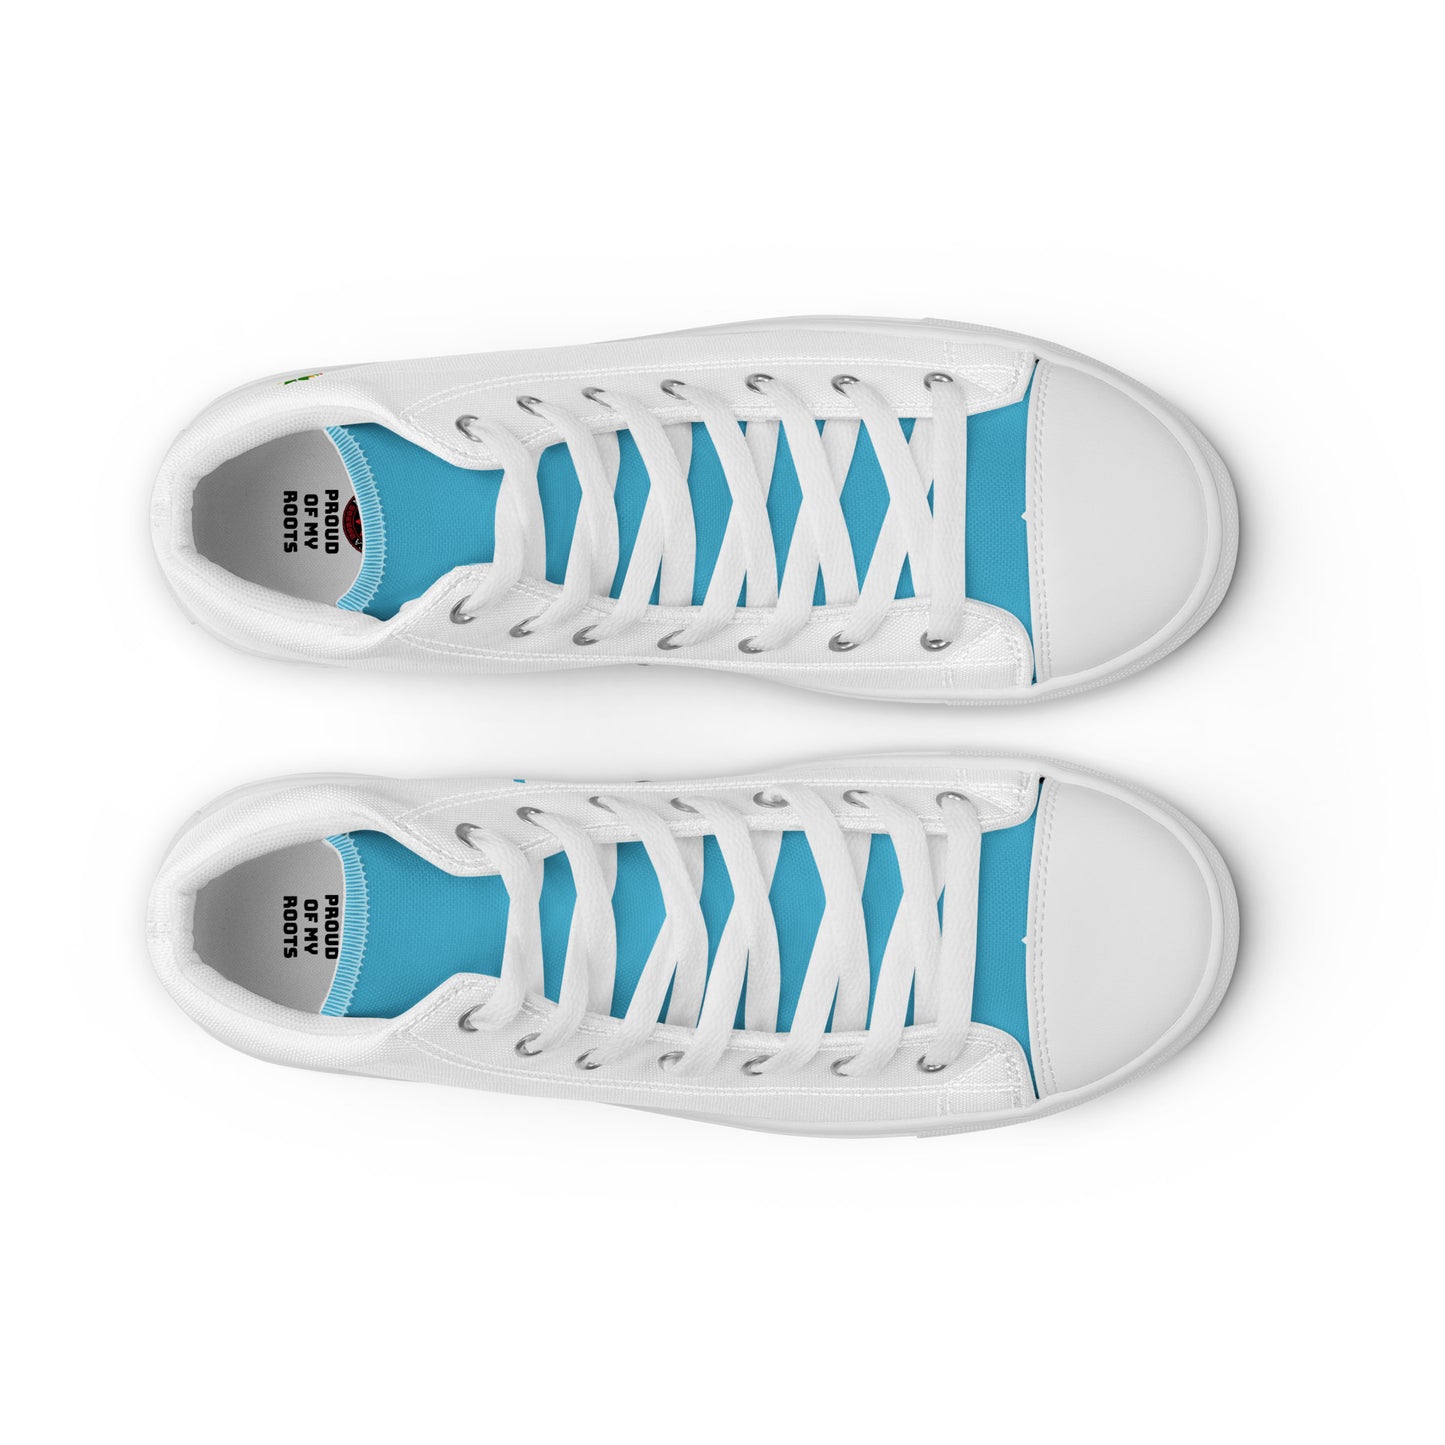 Honduras - Women - White - High top shoes